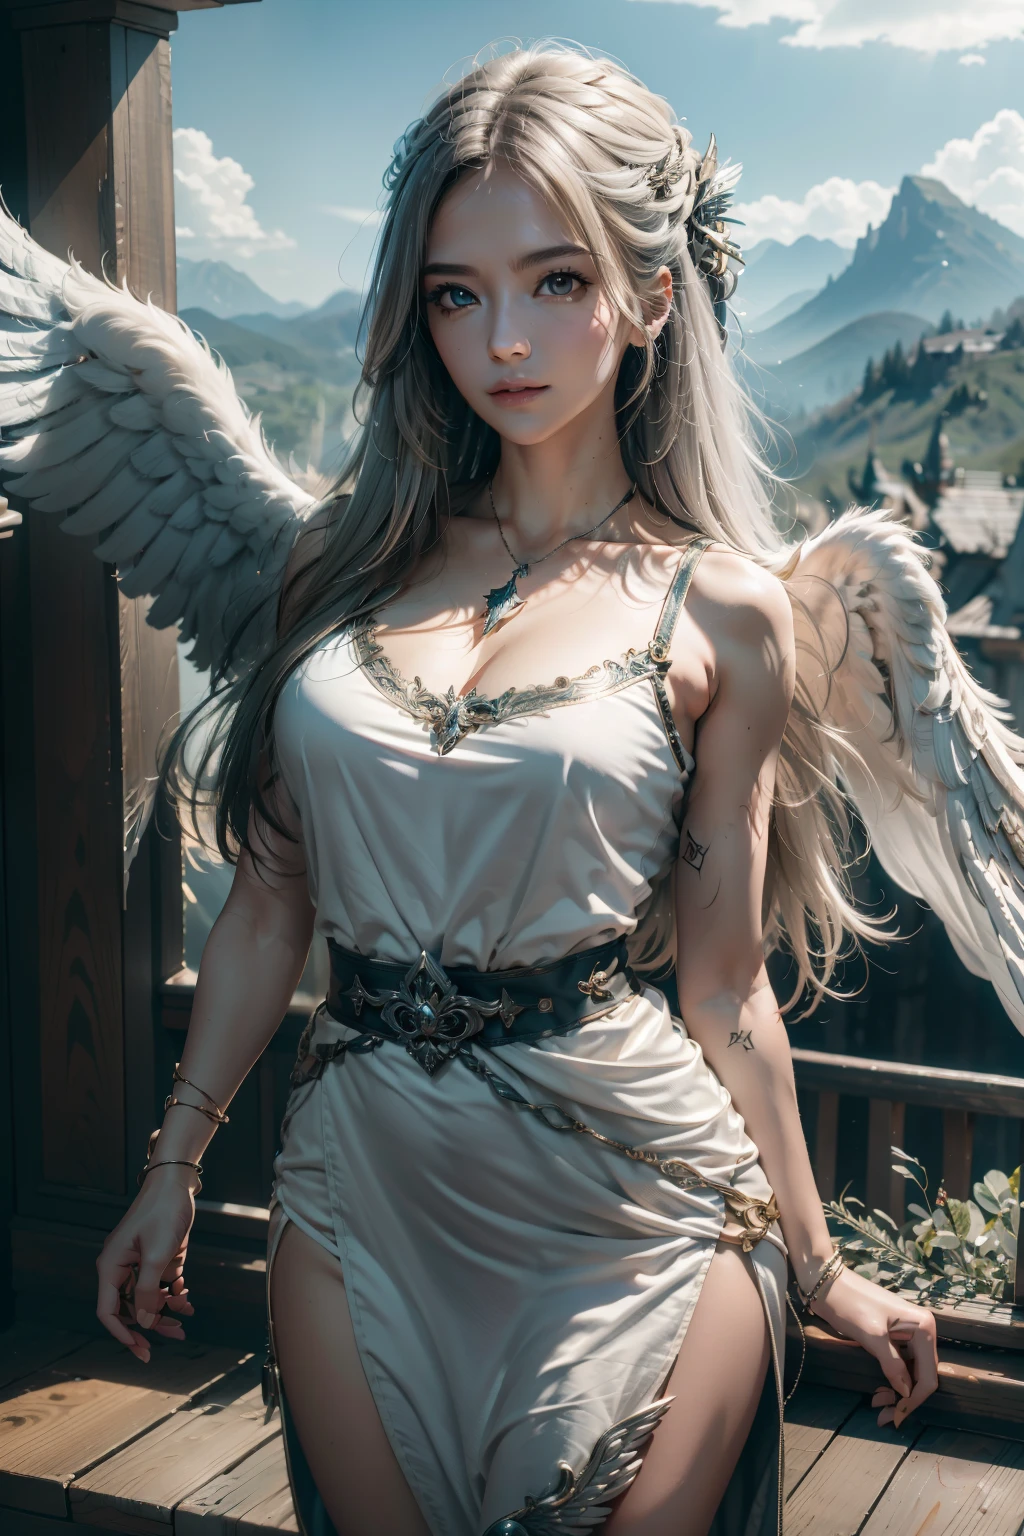 1 名女孩, 獨自的, 官方藝術, 統一8k壁紙, 超詳細, 美化、美麗的, 傑作, 最好的品質, 照片真實感, 女天使、背上有六個白色的大翅膀:2.0、猛禽的翅膀、熾天使、銀甲:2.0、銀手套、银索莱、白色布料、小翅膀髮飾、瓦爾基里、非常大的寬劍、光輝天使圈、天使光環:2.0、光的魔法、寫入的界限深度, 氣氛很好, 平靜的調色板, 軟陰影、你可以看到遠處的森林、看看偏遠的山堡、優雅、看起來像是一個整體、大胸身材、大而豐滿的乳房、寬腰、飄然:2.0、在天空中飛翔:2.0、高空炸、草原的天空、遠處就能看到山上的城堡